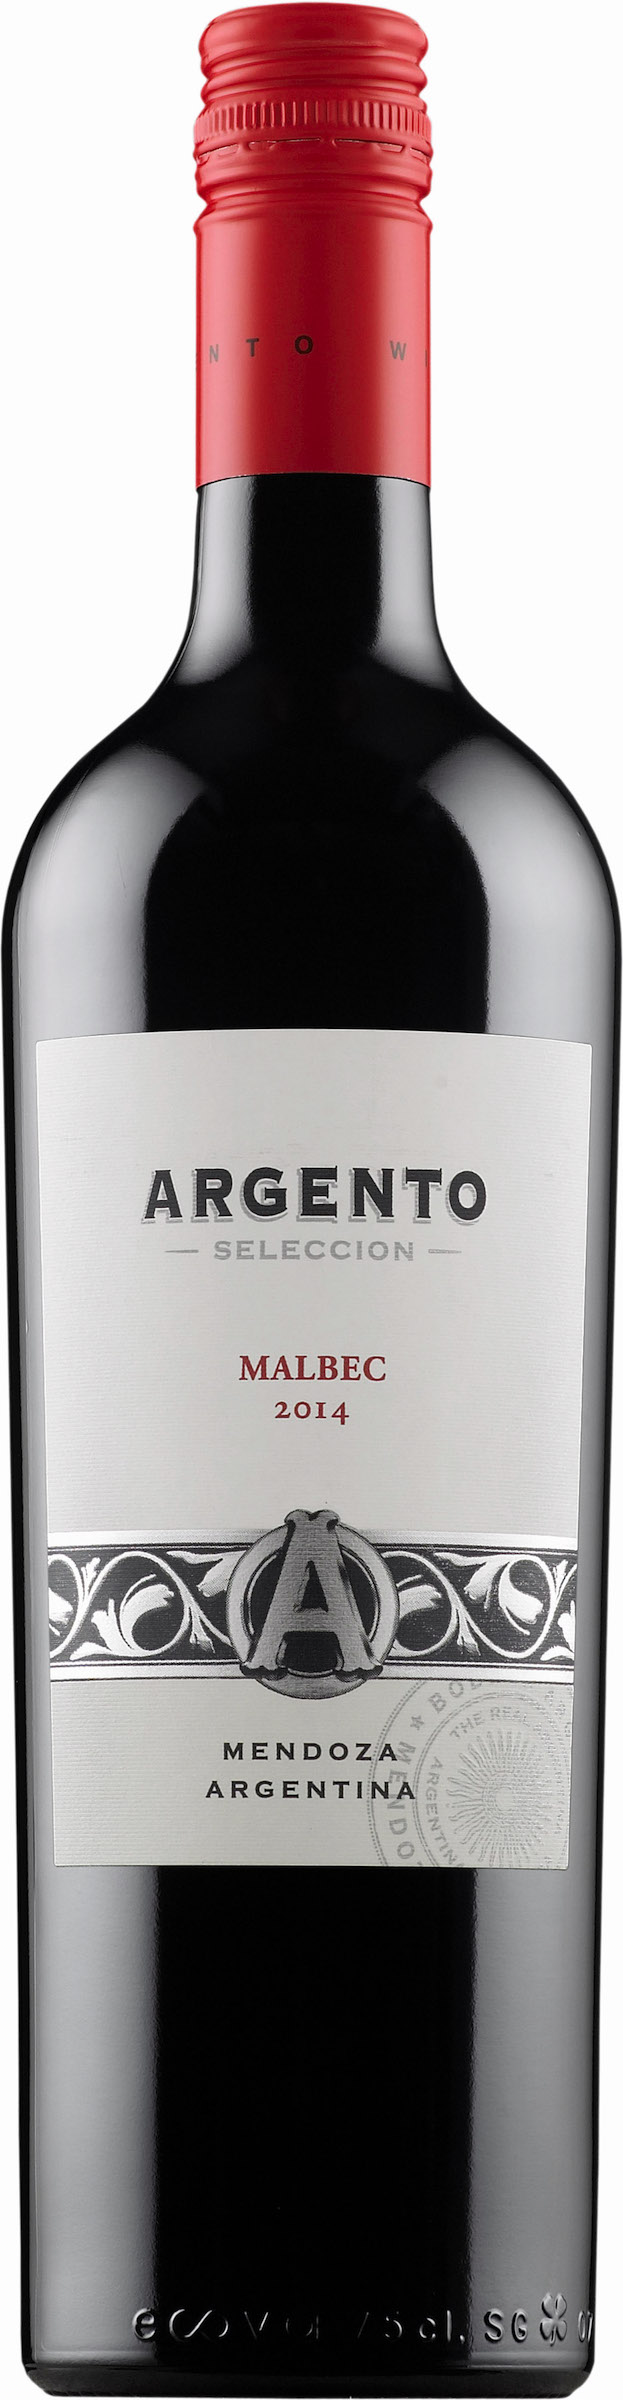 Вино мальбек мендоса. Вино Argento Malbec. Вино Аргенто Мальбек. Вино Malbec Mendoza. Вино Mendoza Argentina Malbec.